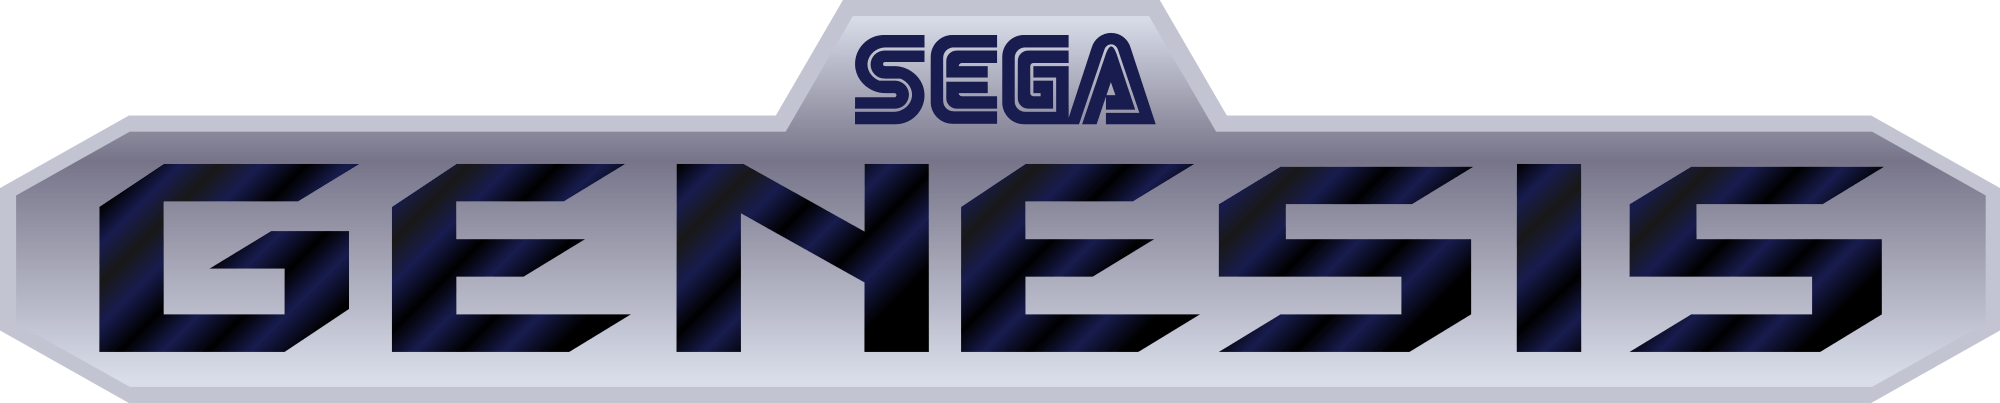 Sega Genesis Logo - Sega genesis Logos